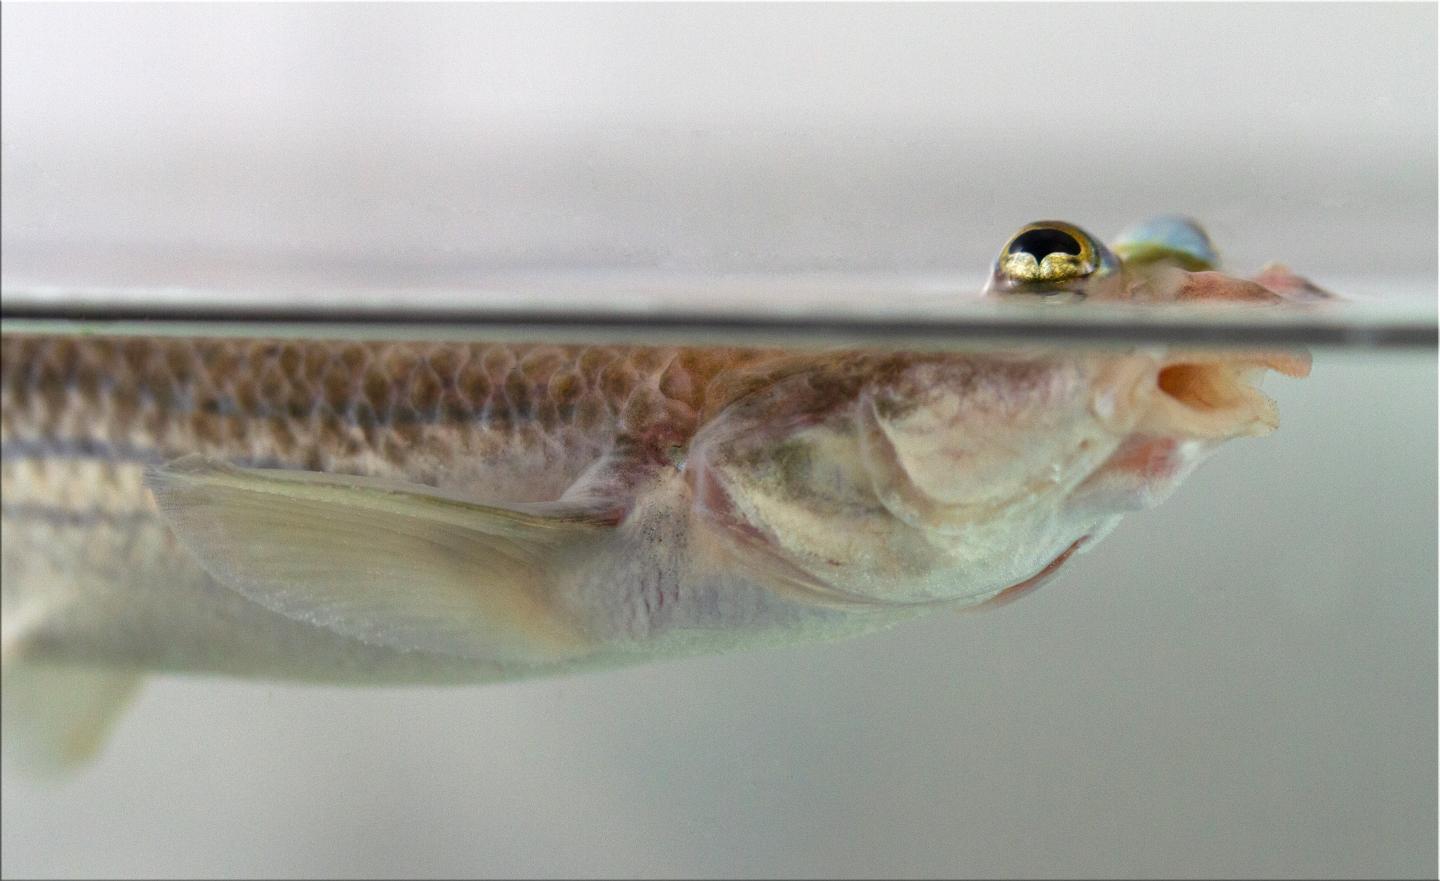 研究人员发现鱼生殖器的不对称 生物帮